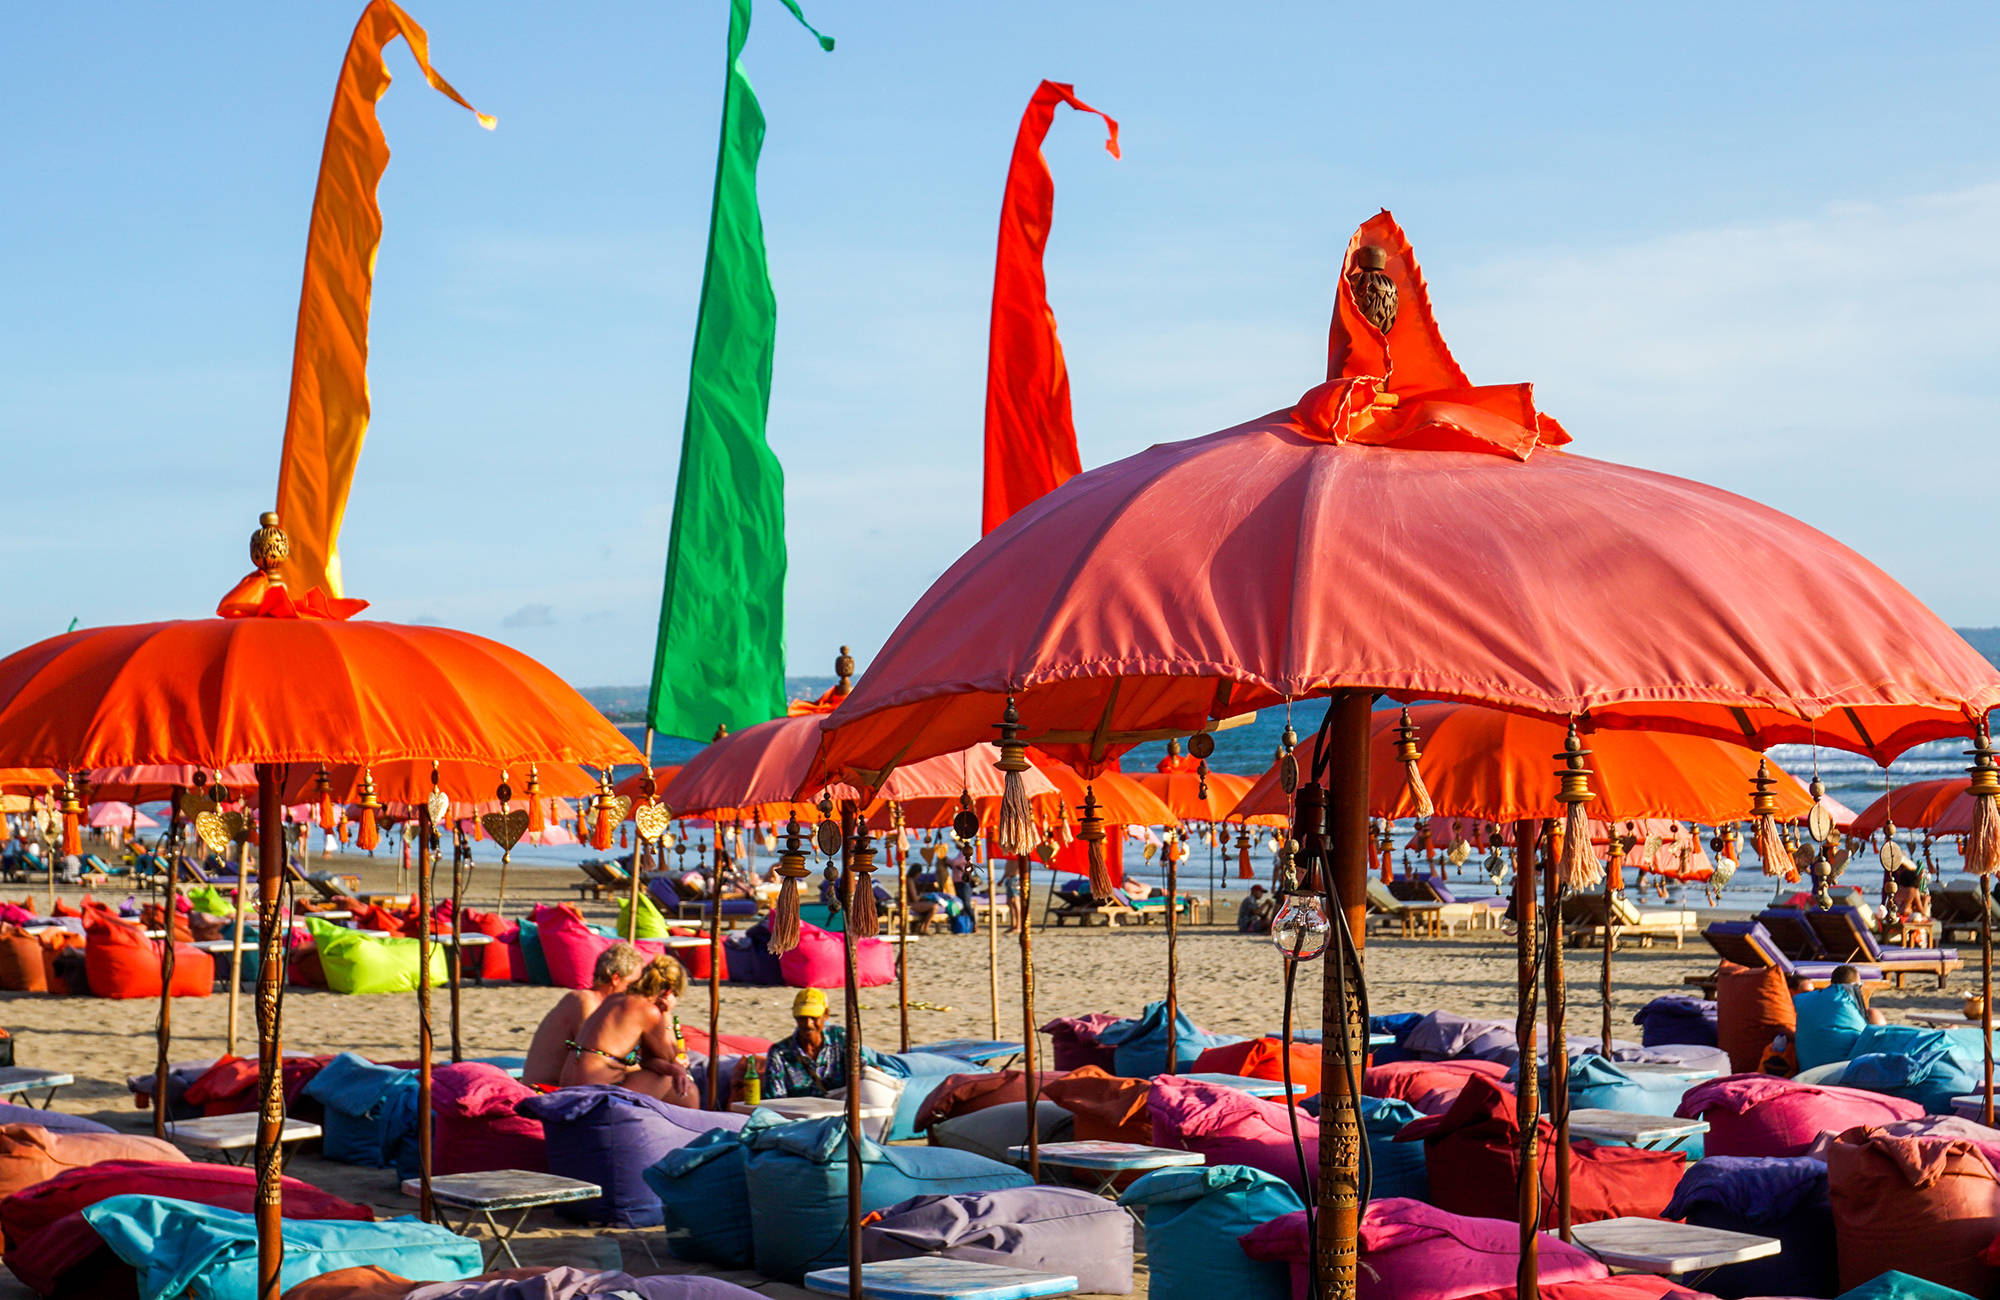 strandfestival på kuta beach på bali